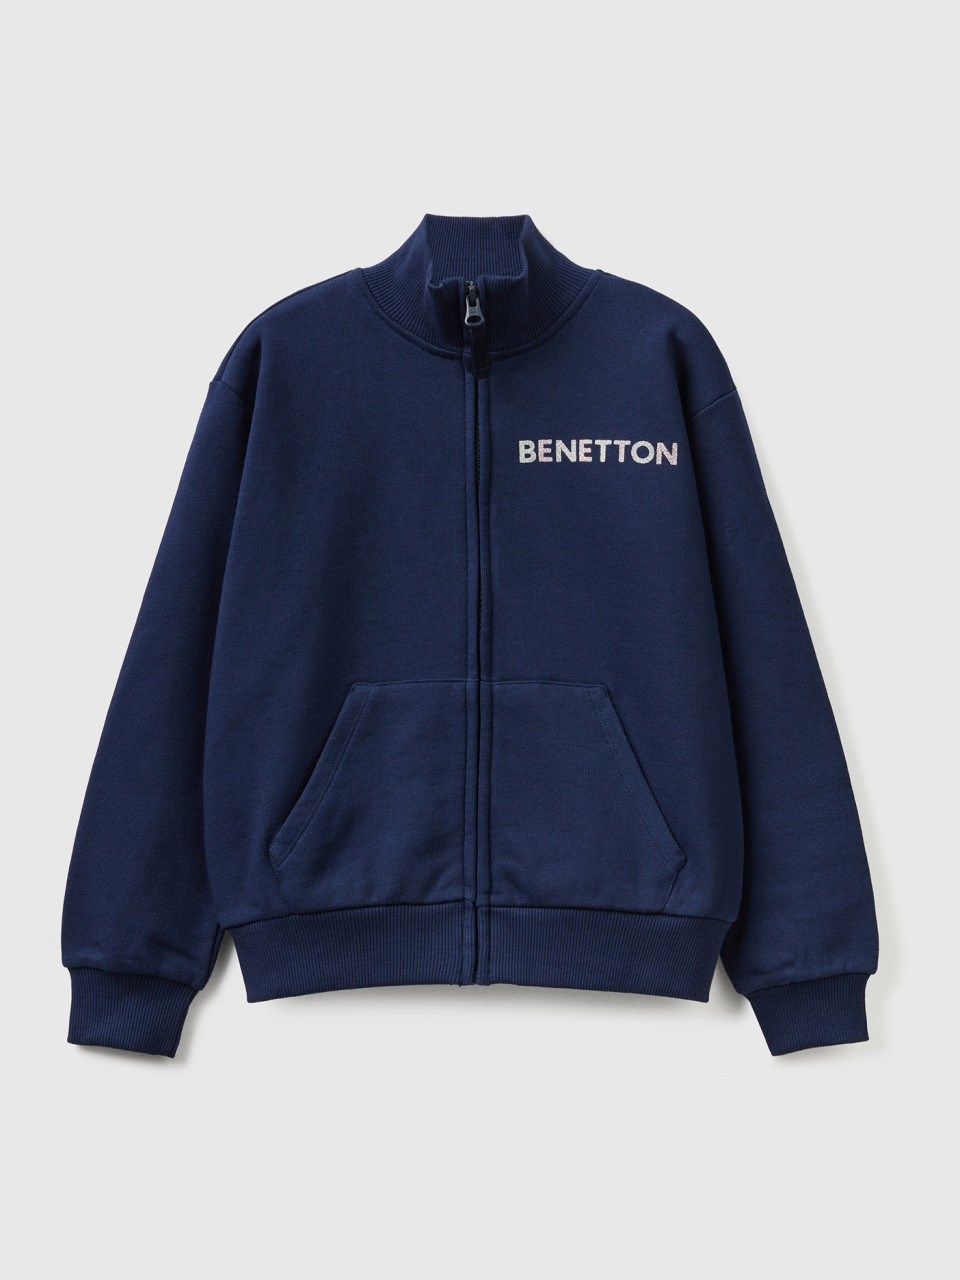 Benetton, Sweatshirt Mit Reißverschluss Und Kragen, Dunkelblau, female